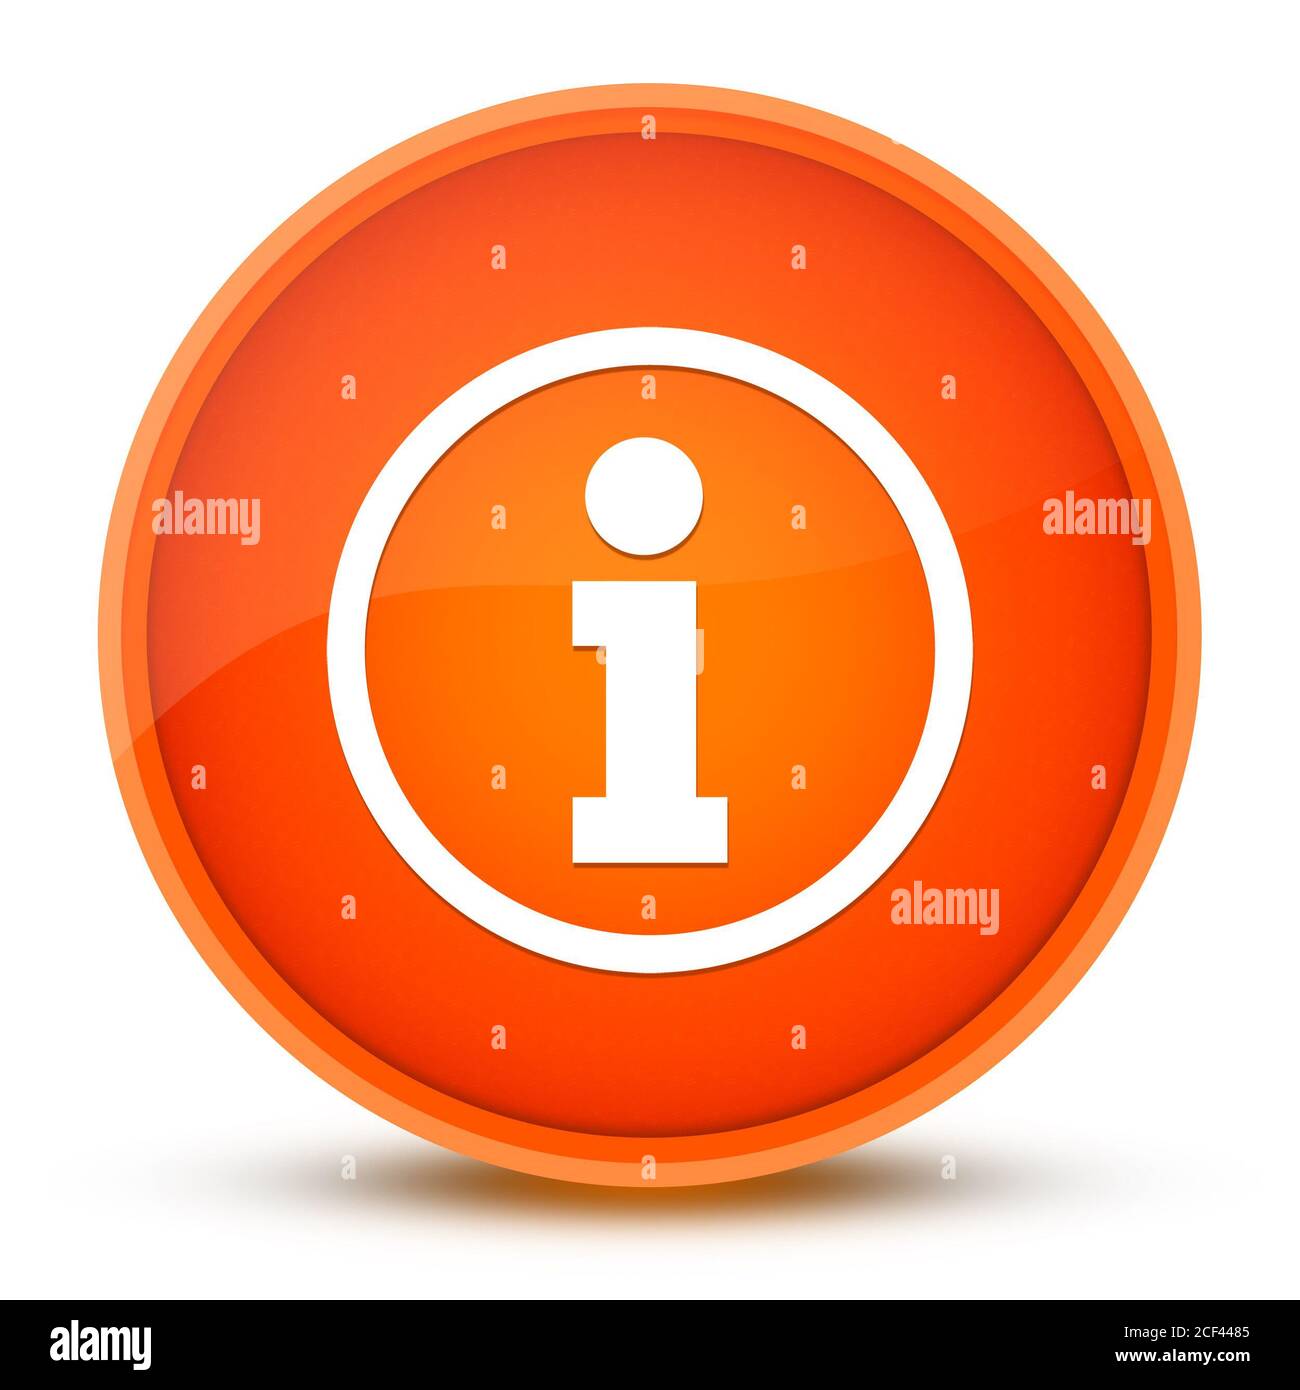 L'icône Infos isolé sur bouton rond orange brillant abstract illustration Banque D'Images